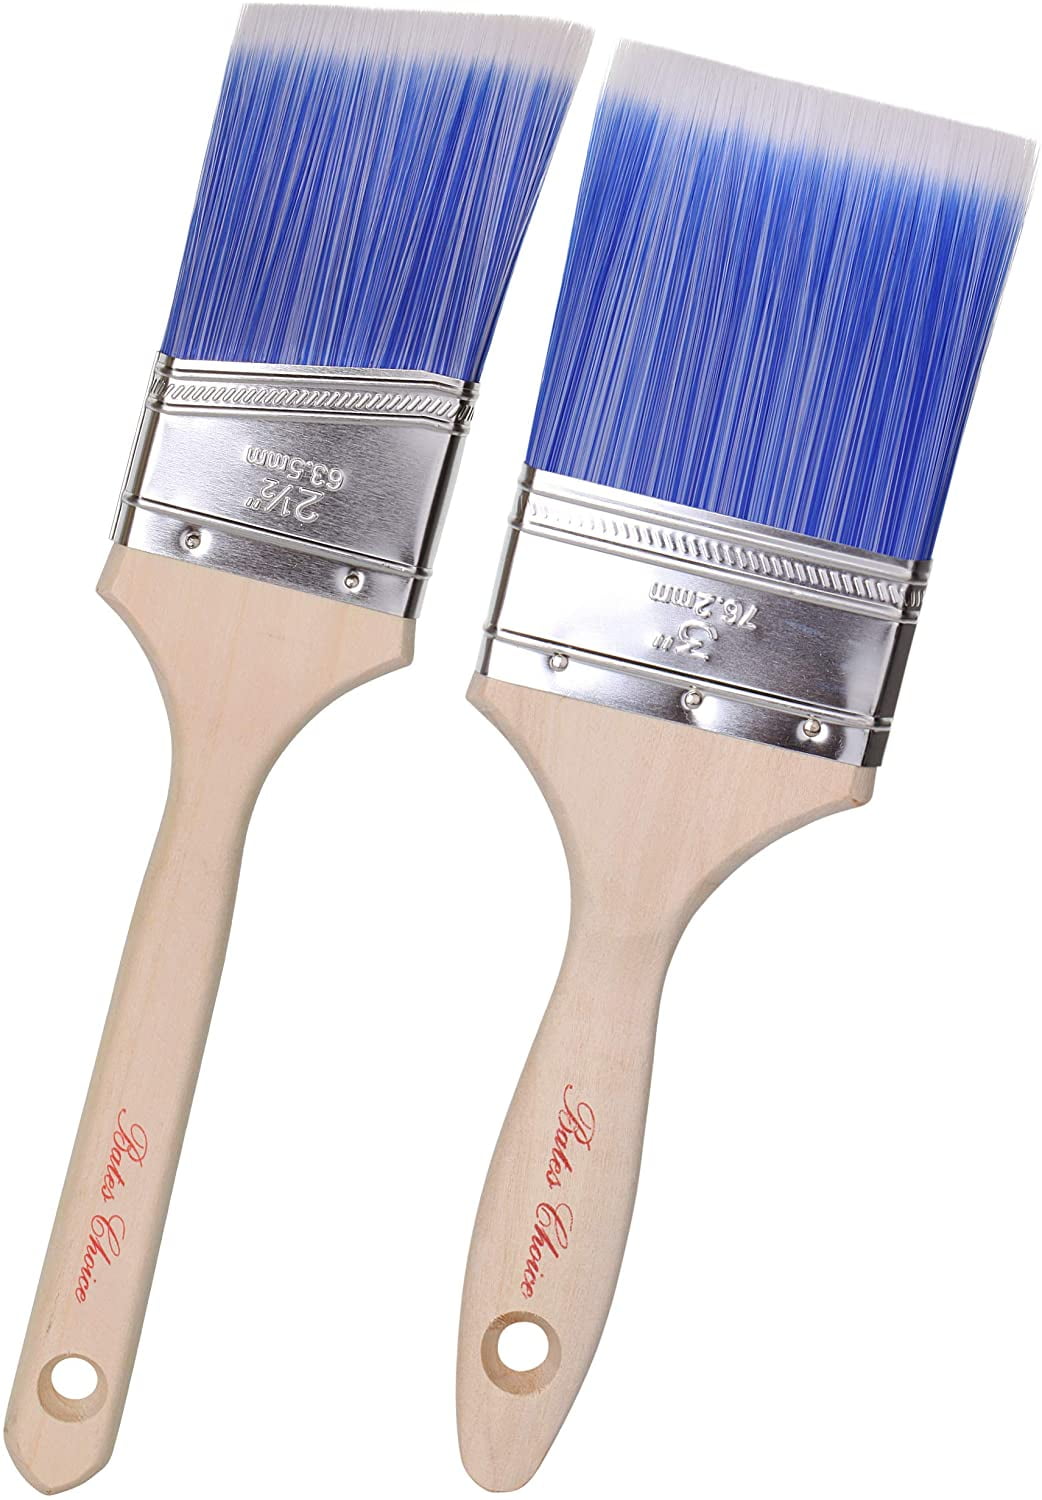 Bates- Trim Brushes, 2 Pack, 0.75 Inch, Edge Painting Tool, Trim Paint  Brushes, Trim Painting Tool, Paint Trimmer Edger, Trim Brush - Bates Choice